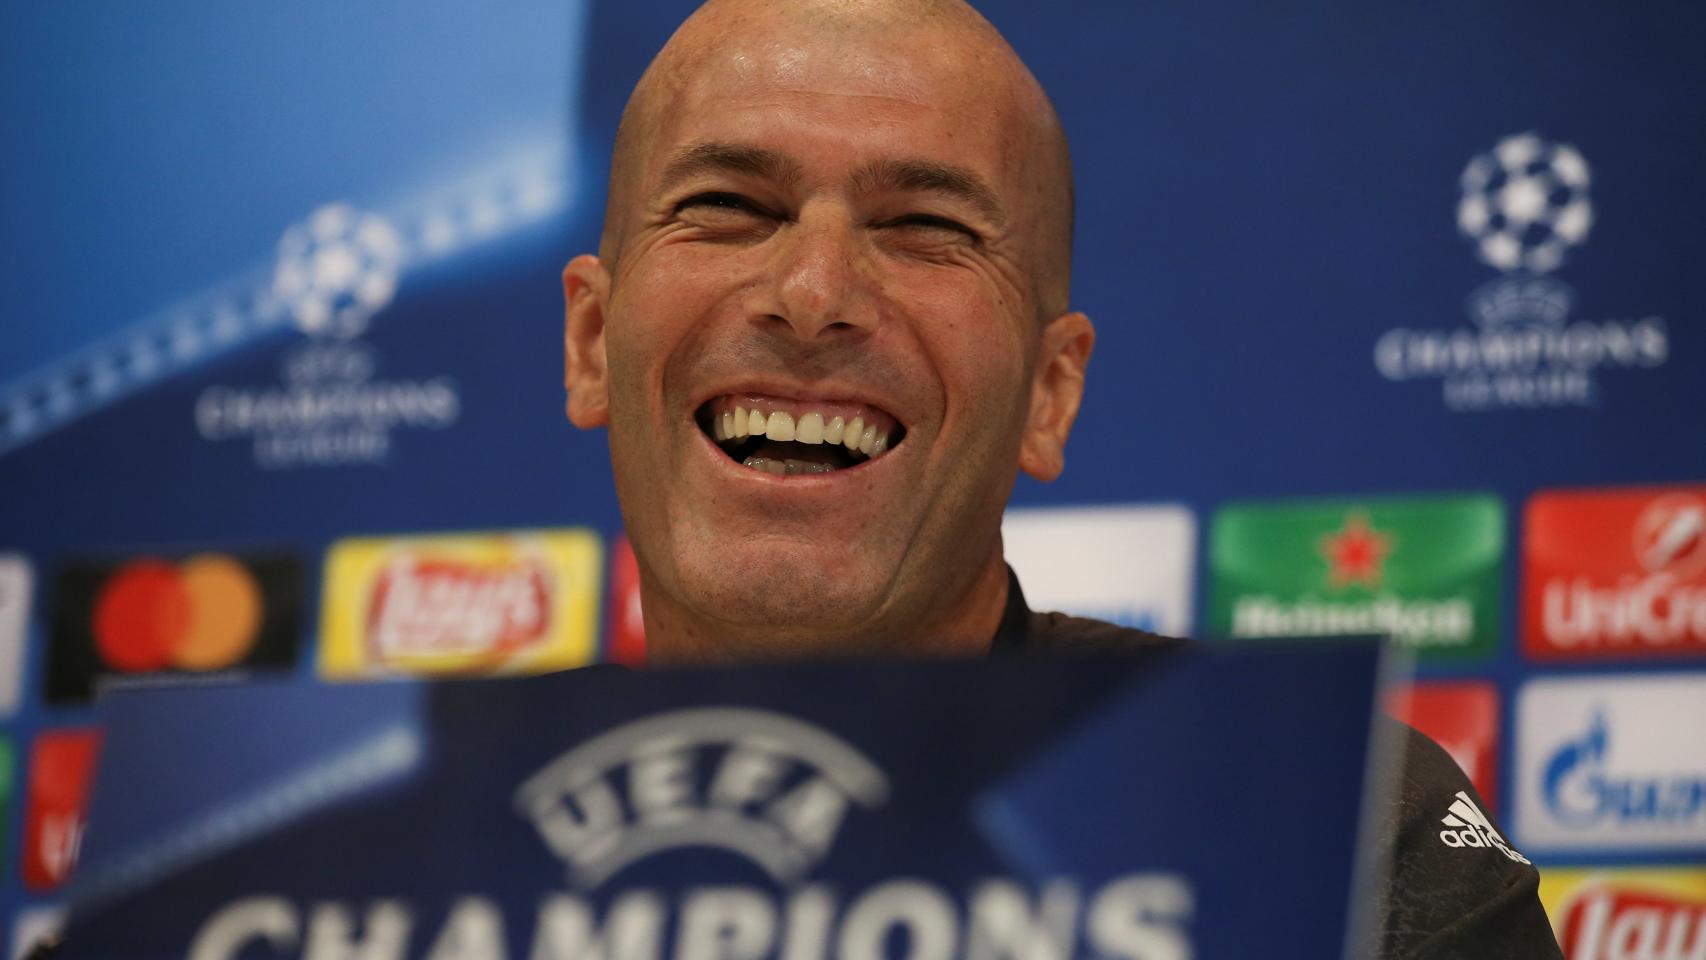 Zinedine Zidane, durante la rueda de prensa previa de la Champions.